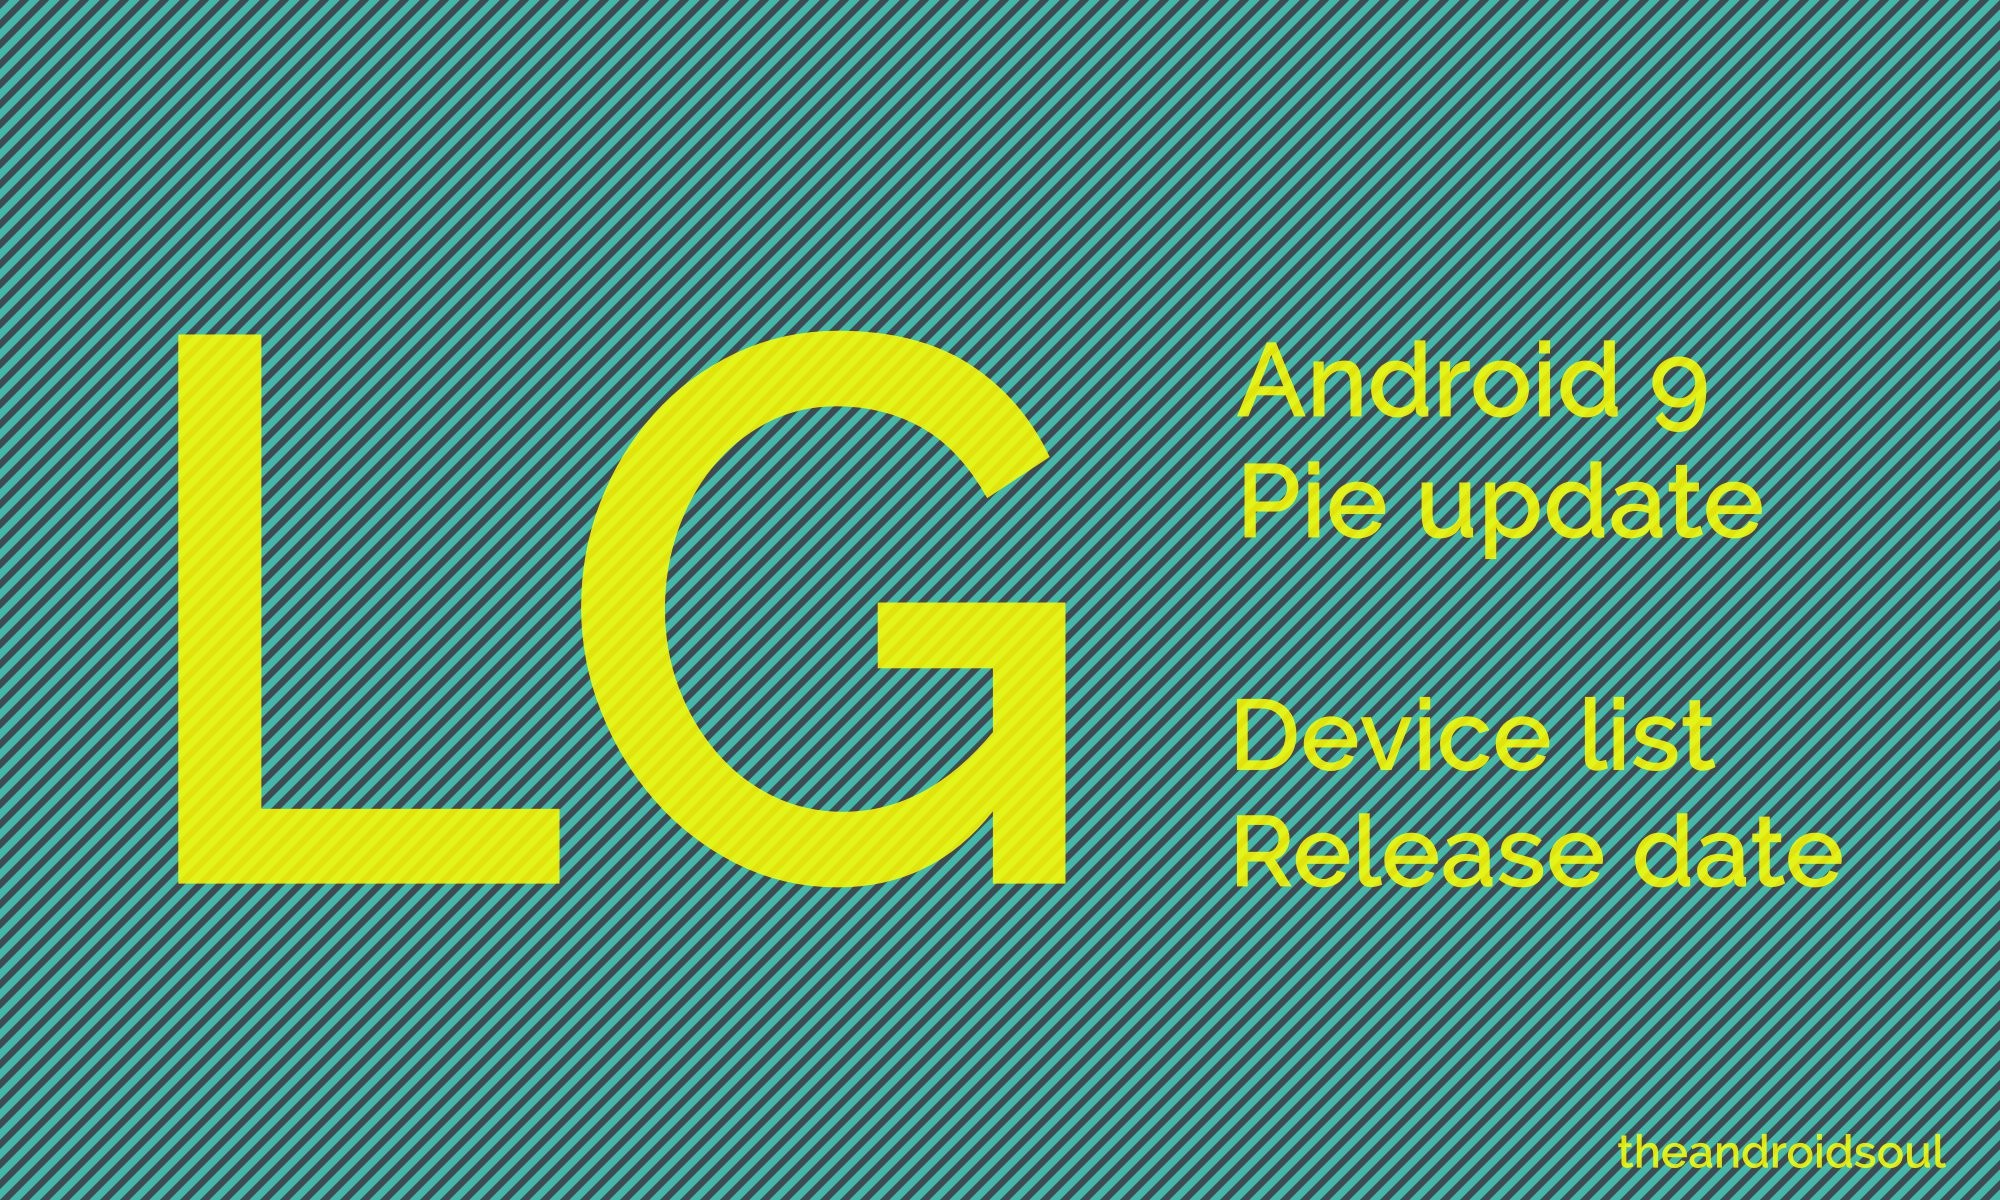 LG Pie update device list